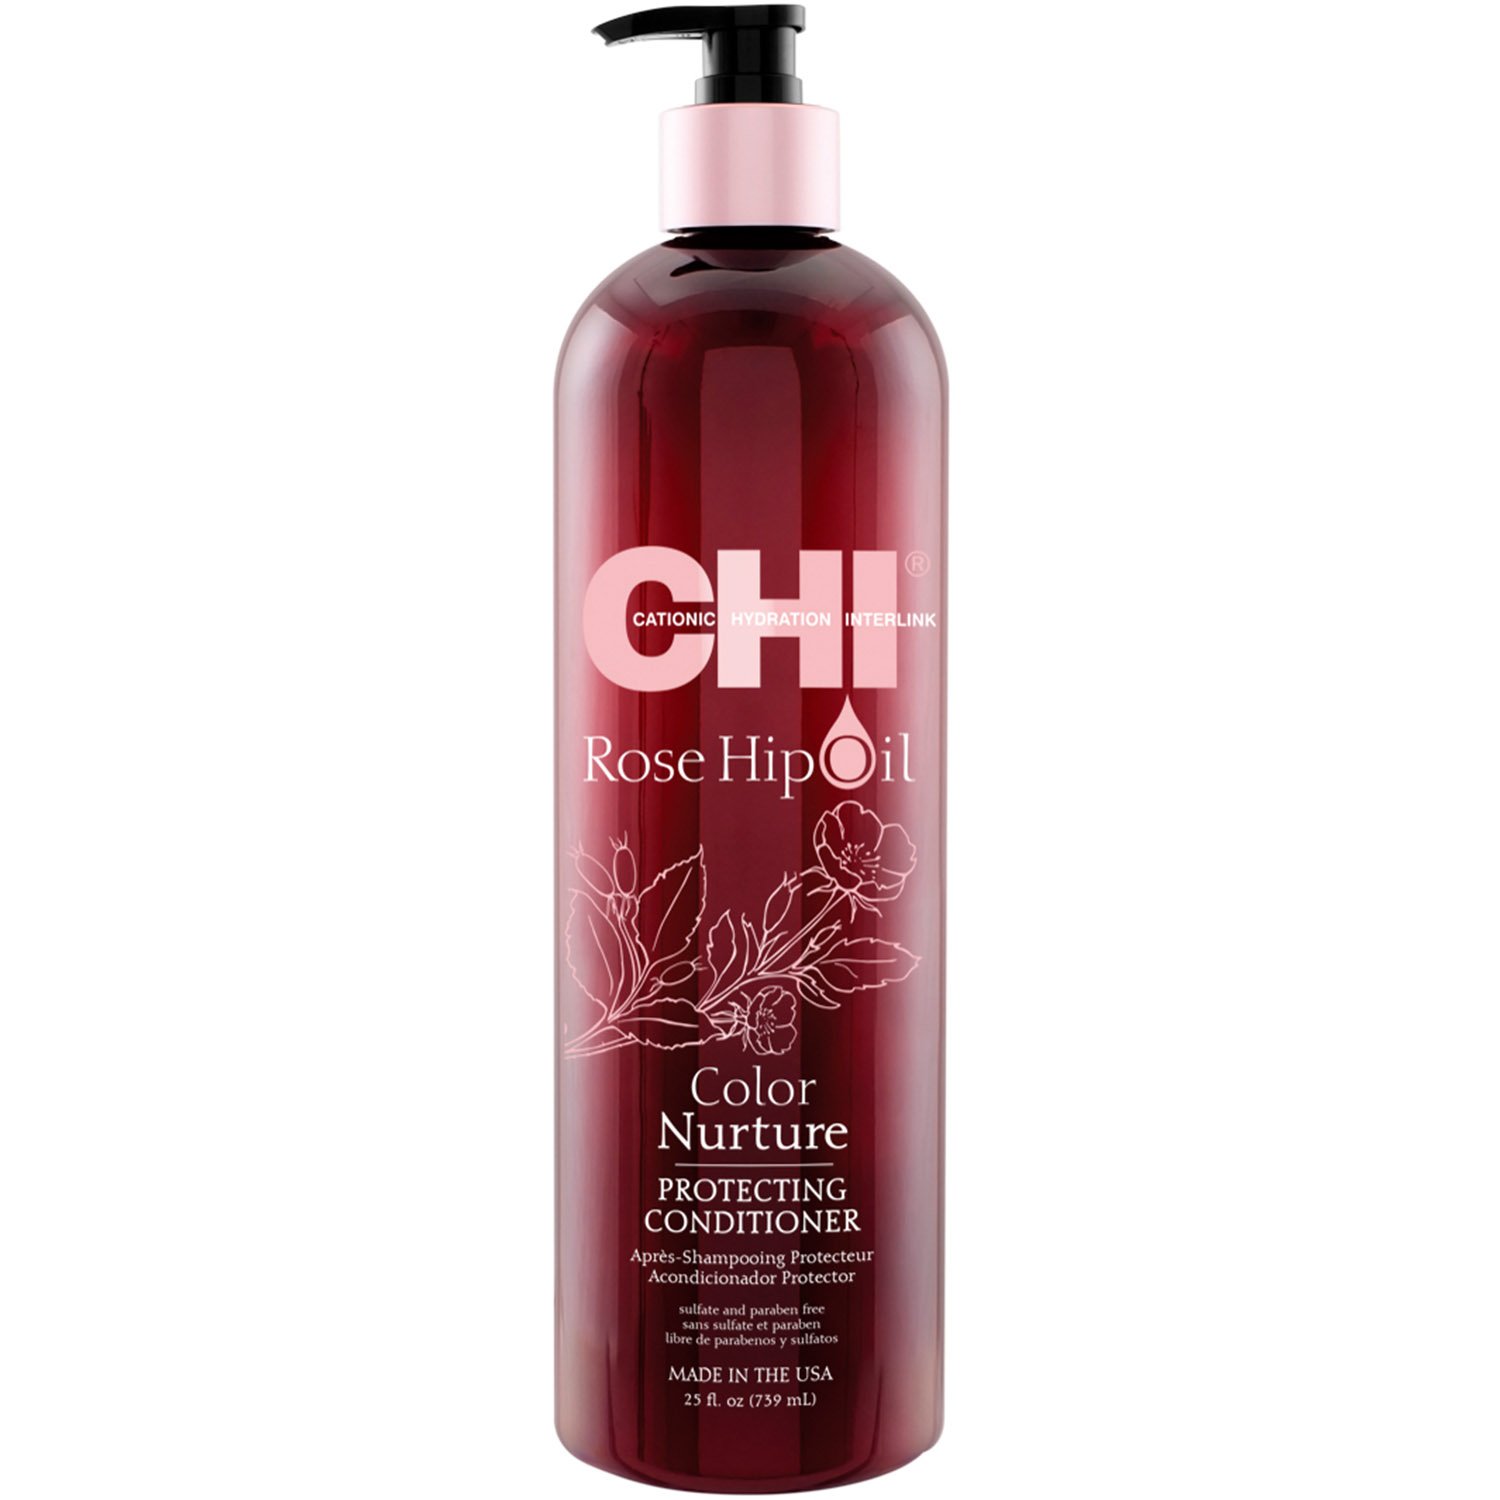 Кондиционер CHI Rosehip Oil Color Nuture Protecting Conditioner для окрашенных волос, 739 мл - фото 1